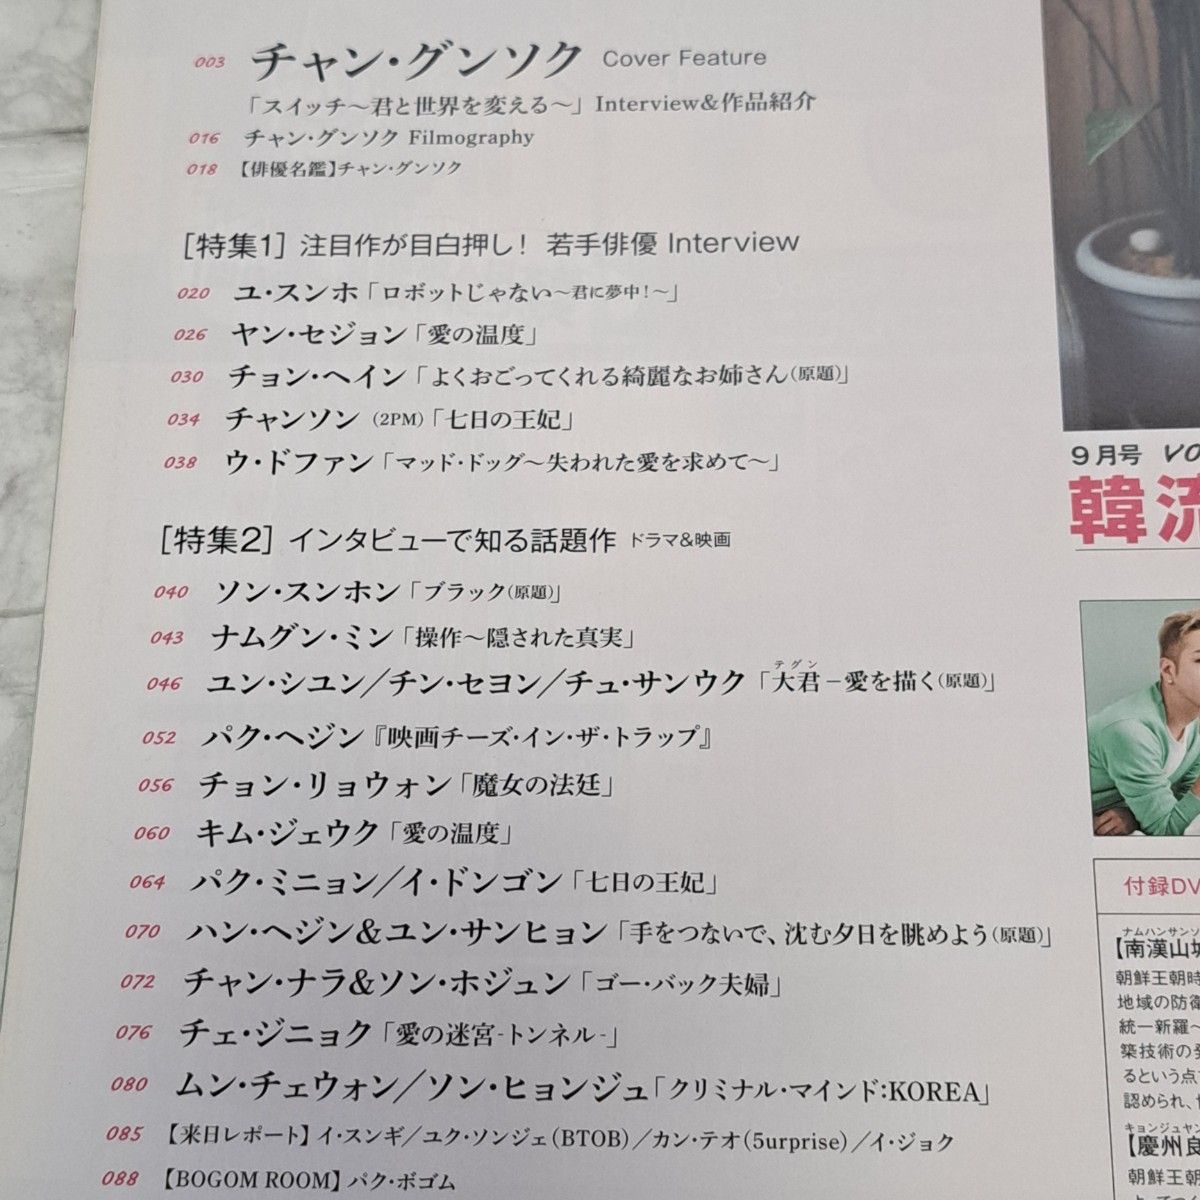 韓流旋風 vol.80 2018.9 表紙 チャングンソク 付録DVD ポスター付き